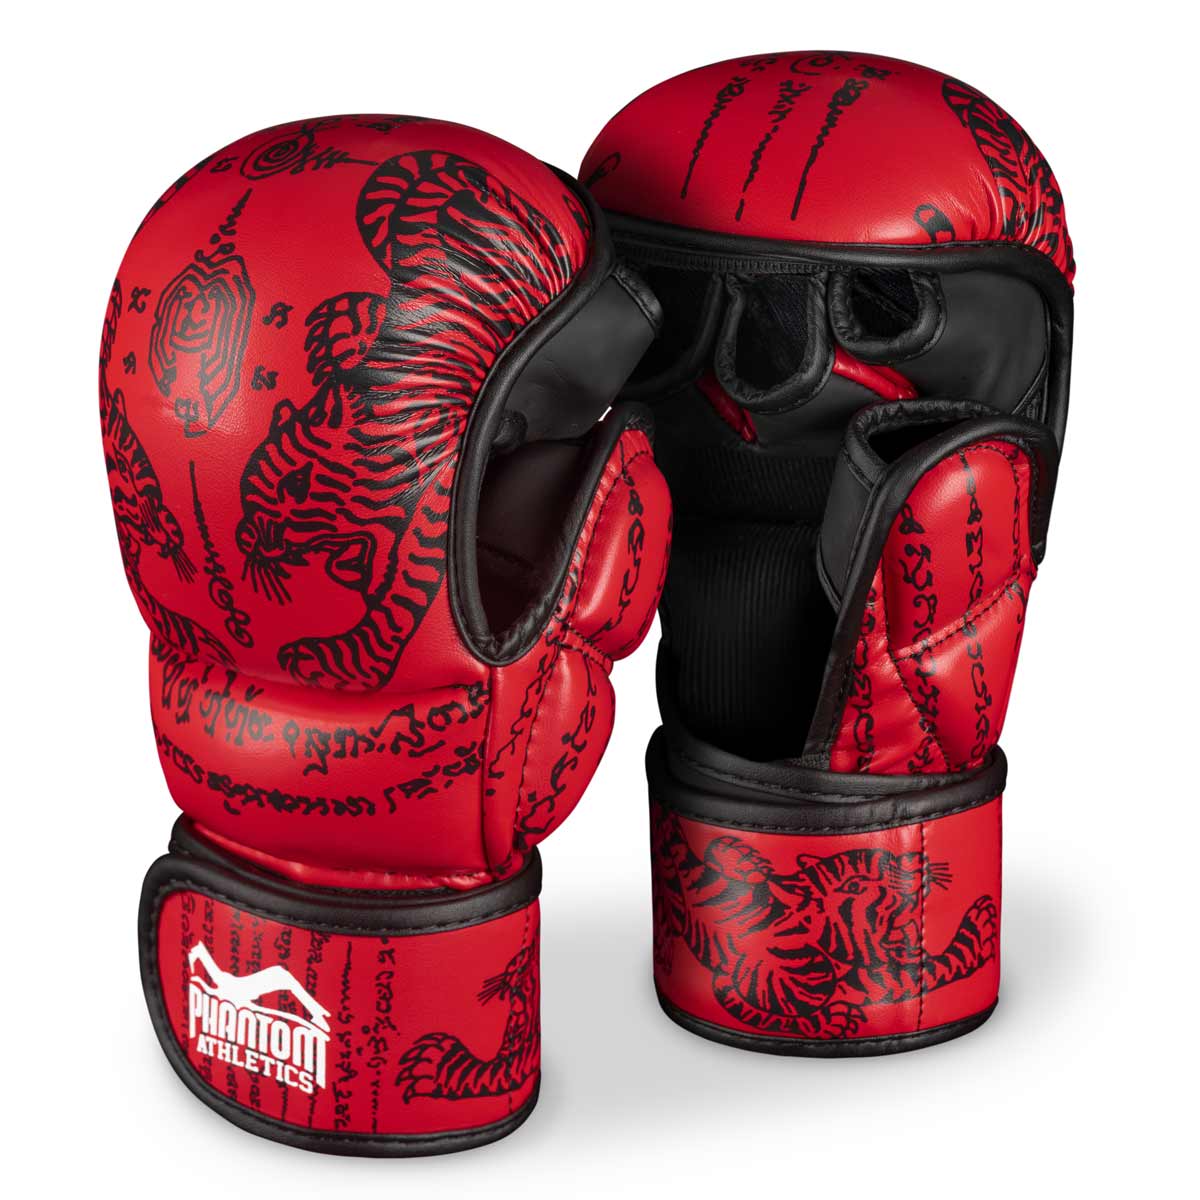 Γάντια Phantom Muay Thai για ταϊλανδέζικο μποξ και MMA sparring, αγώνες και προπόνηση. Στο παραδοσιακό σχέδιο Sak Yant και το κόκκινο χρώμα.